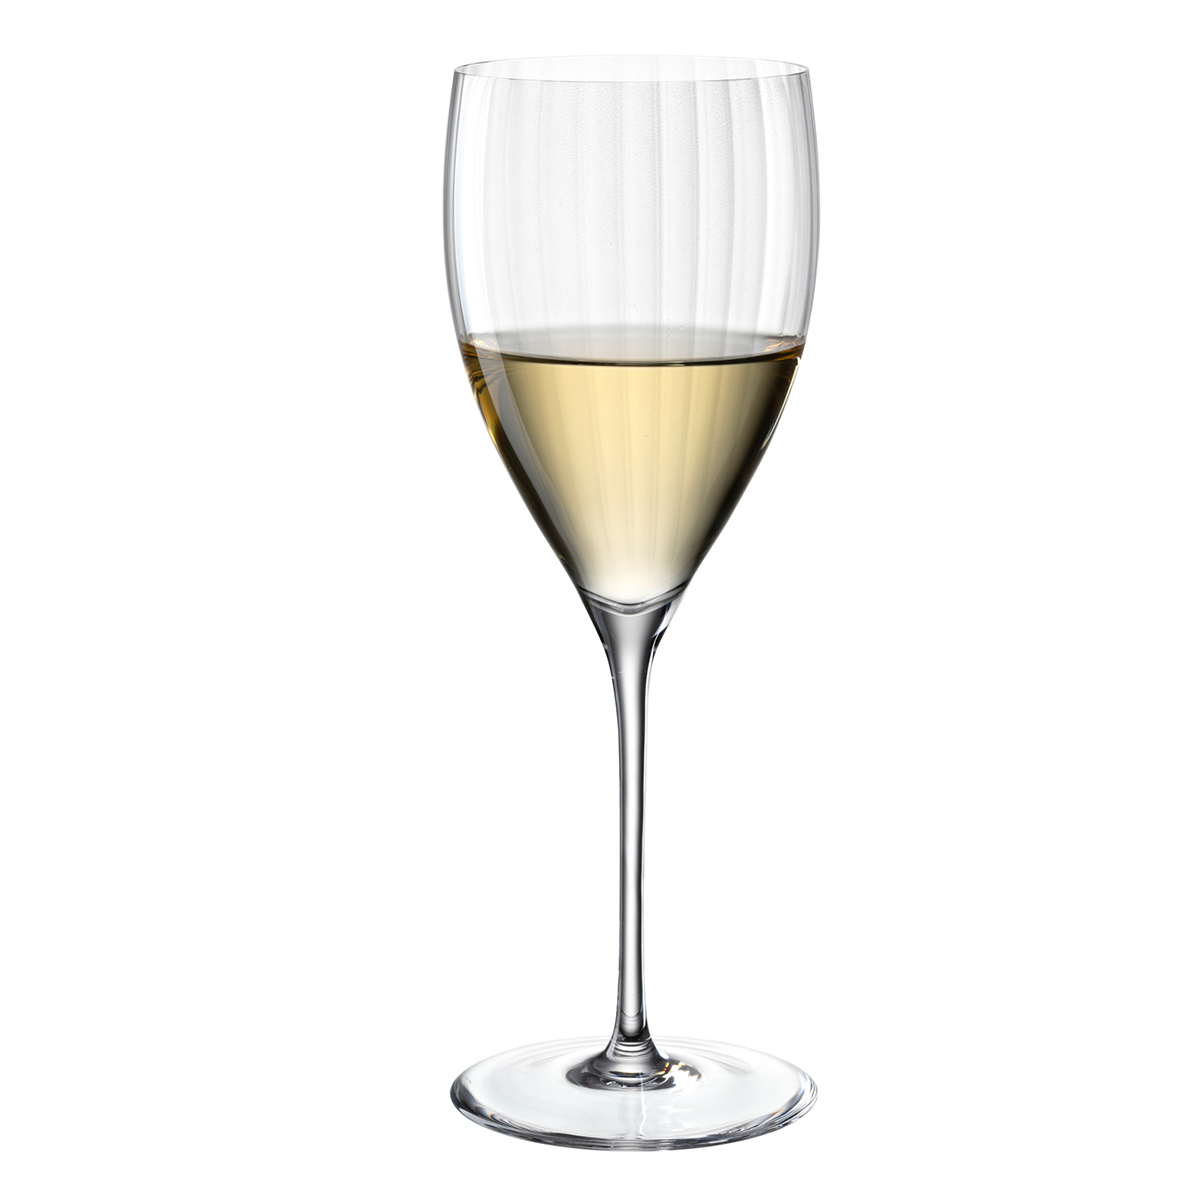 Čaša za belo vino POESIA 350ml 69163 